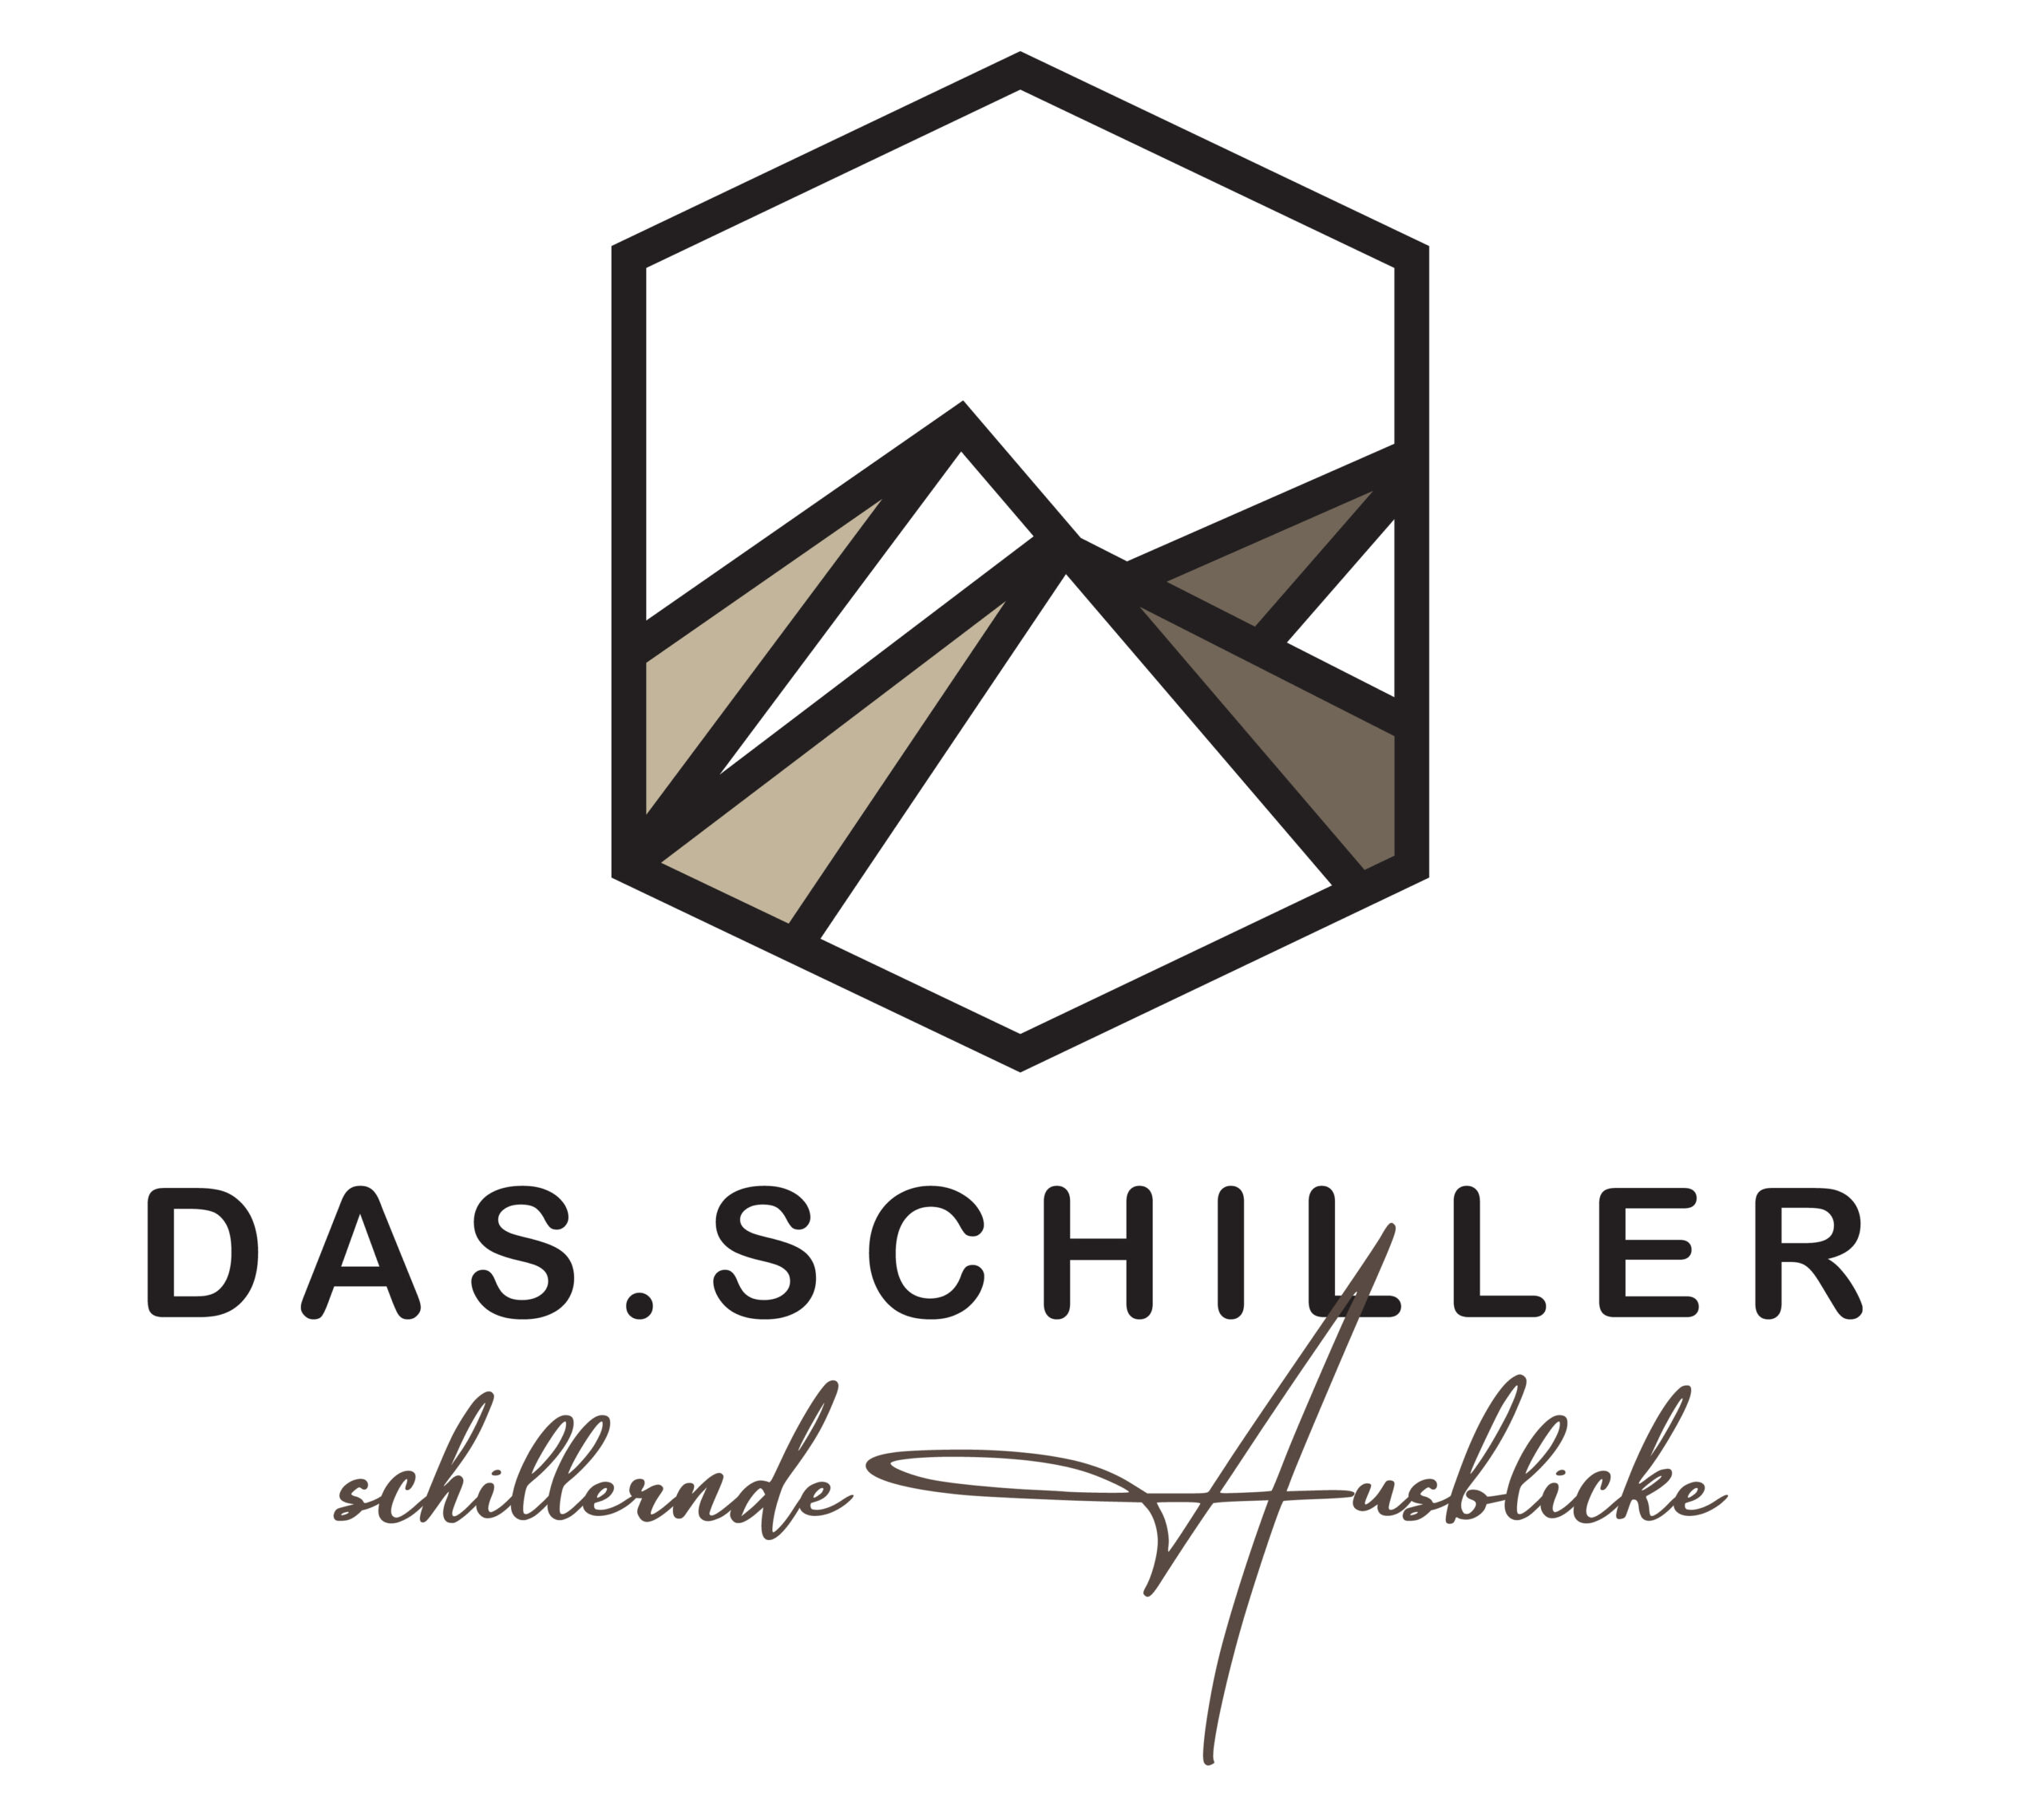 www.das-schiller.at